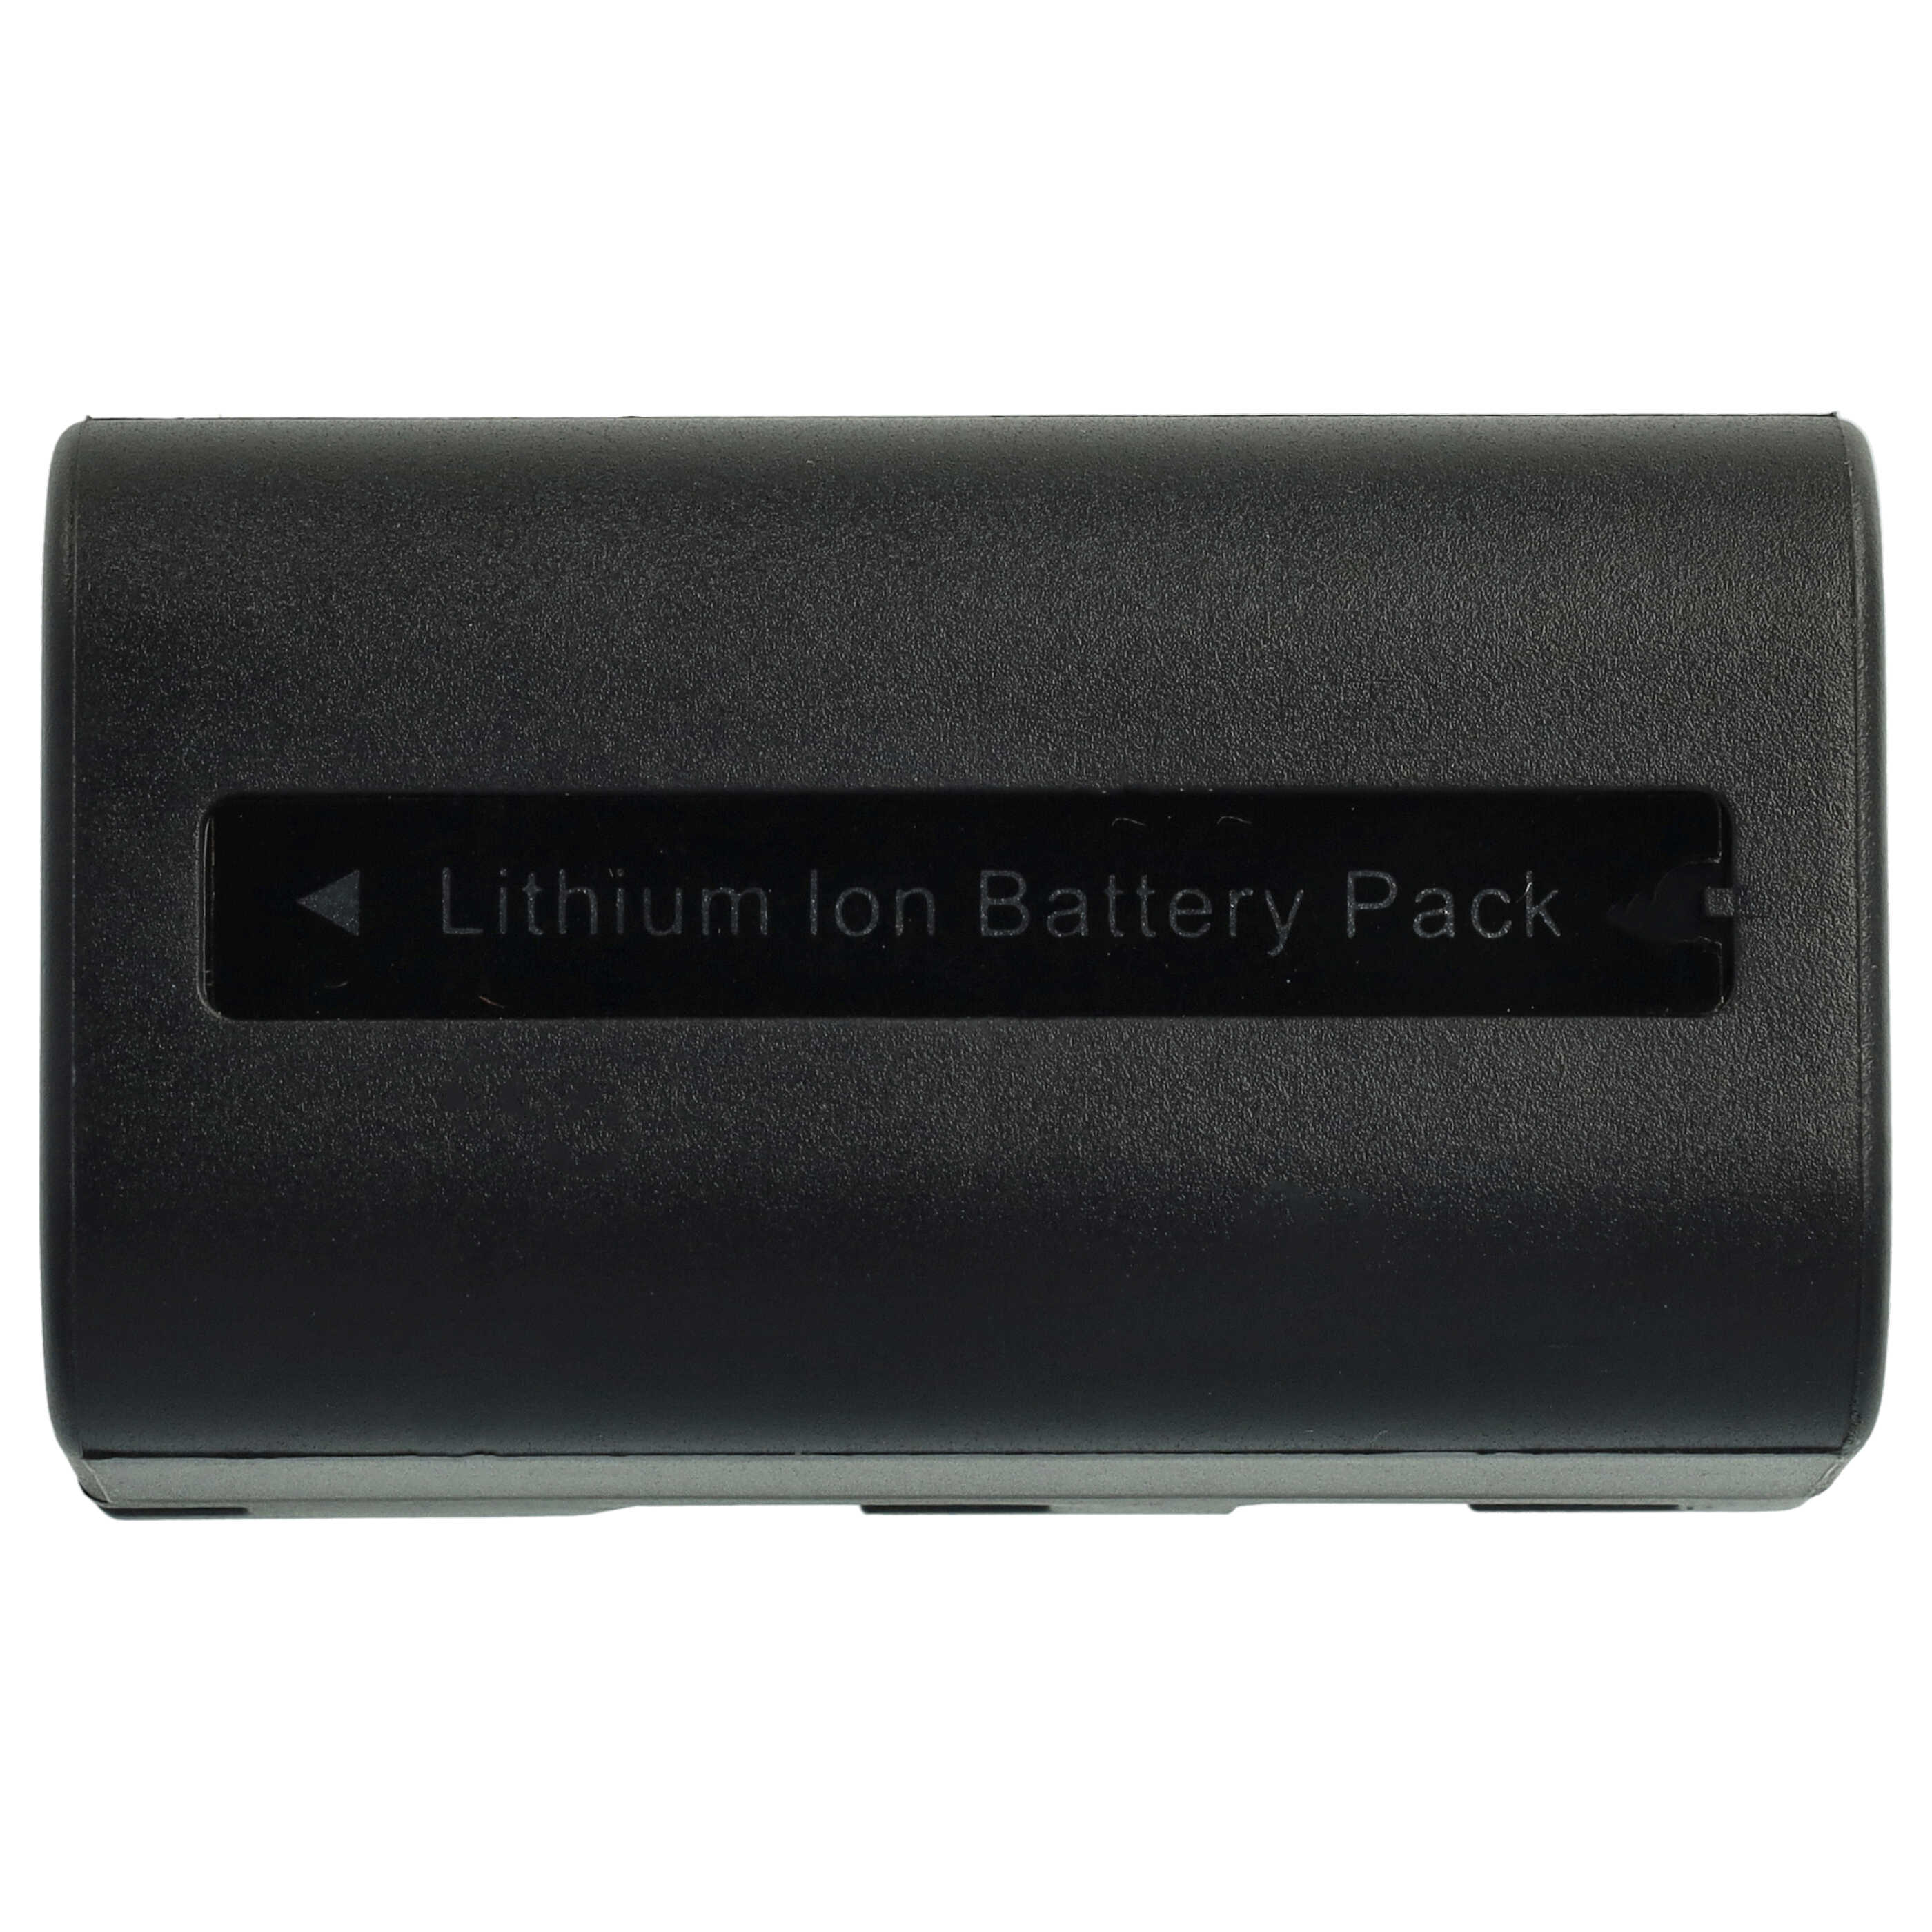 Akumulator do aparatu cyfrowego zamiennik Samsung SB-LSM80, SB-LSM320, SB-LSM160 - 1640 mAh 7,2 V Li-Ion